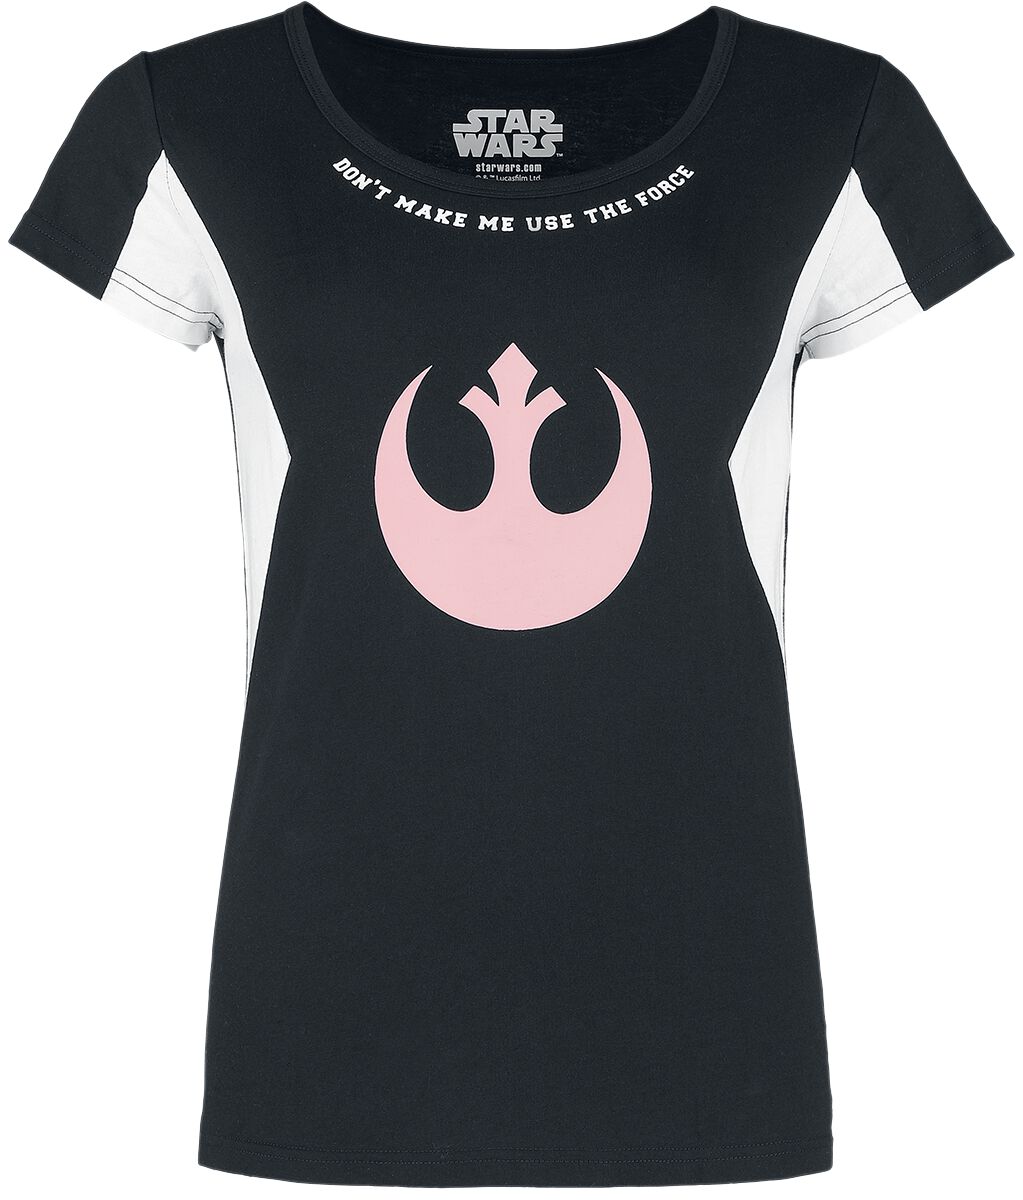 Star Wars T-Shirt - S bis M - für Damen - Größe S - schwarz/weiß  - EMP exklusives Merchandise!